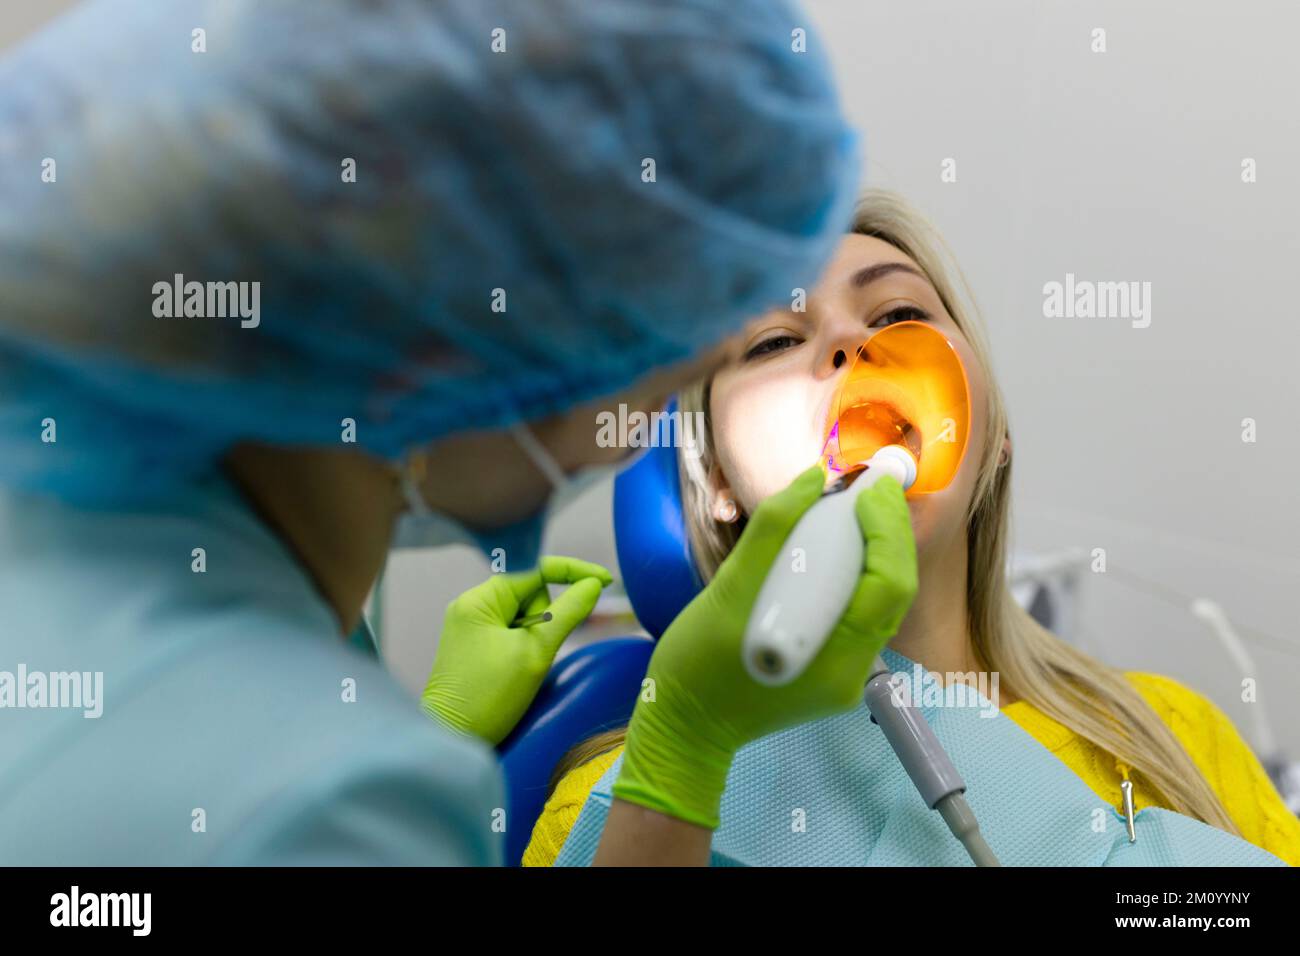 Medizin, Zahnheilkunde und Gesundheitskonzept, Zahnarzt mit zahnärztlicher Härte-UV-Lampe an den Zähnen des Patienten. Stockfoto